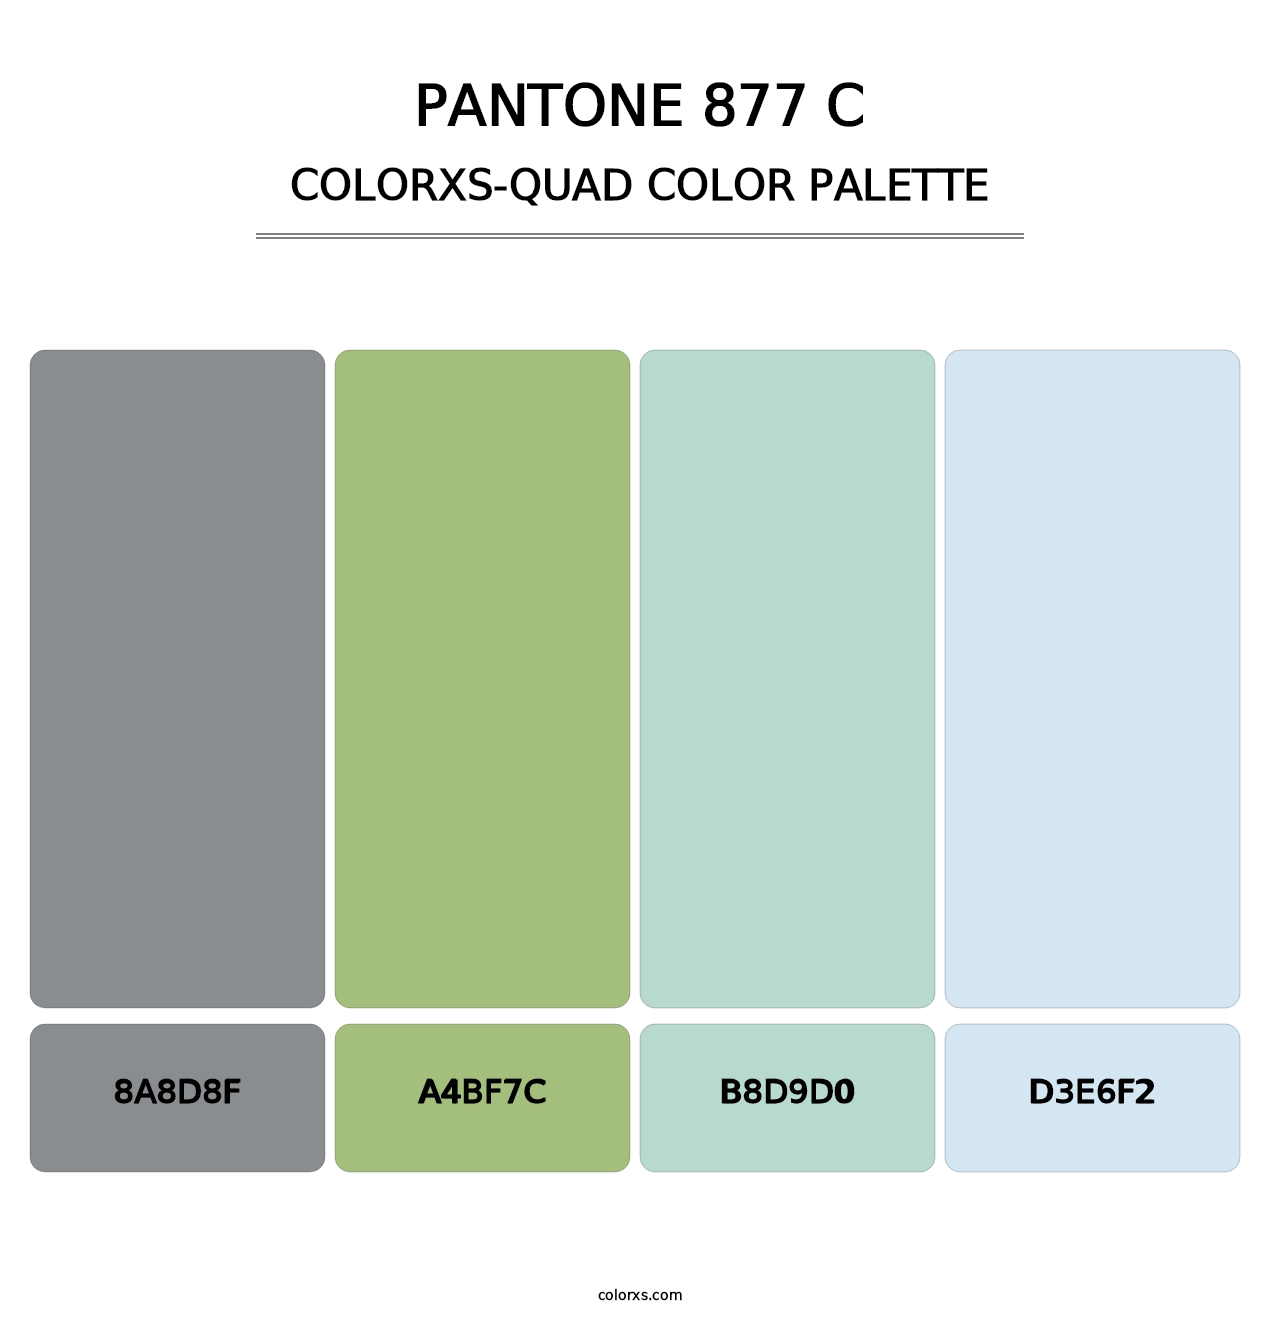 PANTONE 877 C - Colorxs Quad Palette